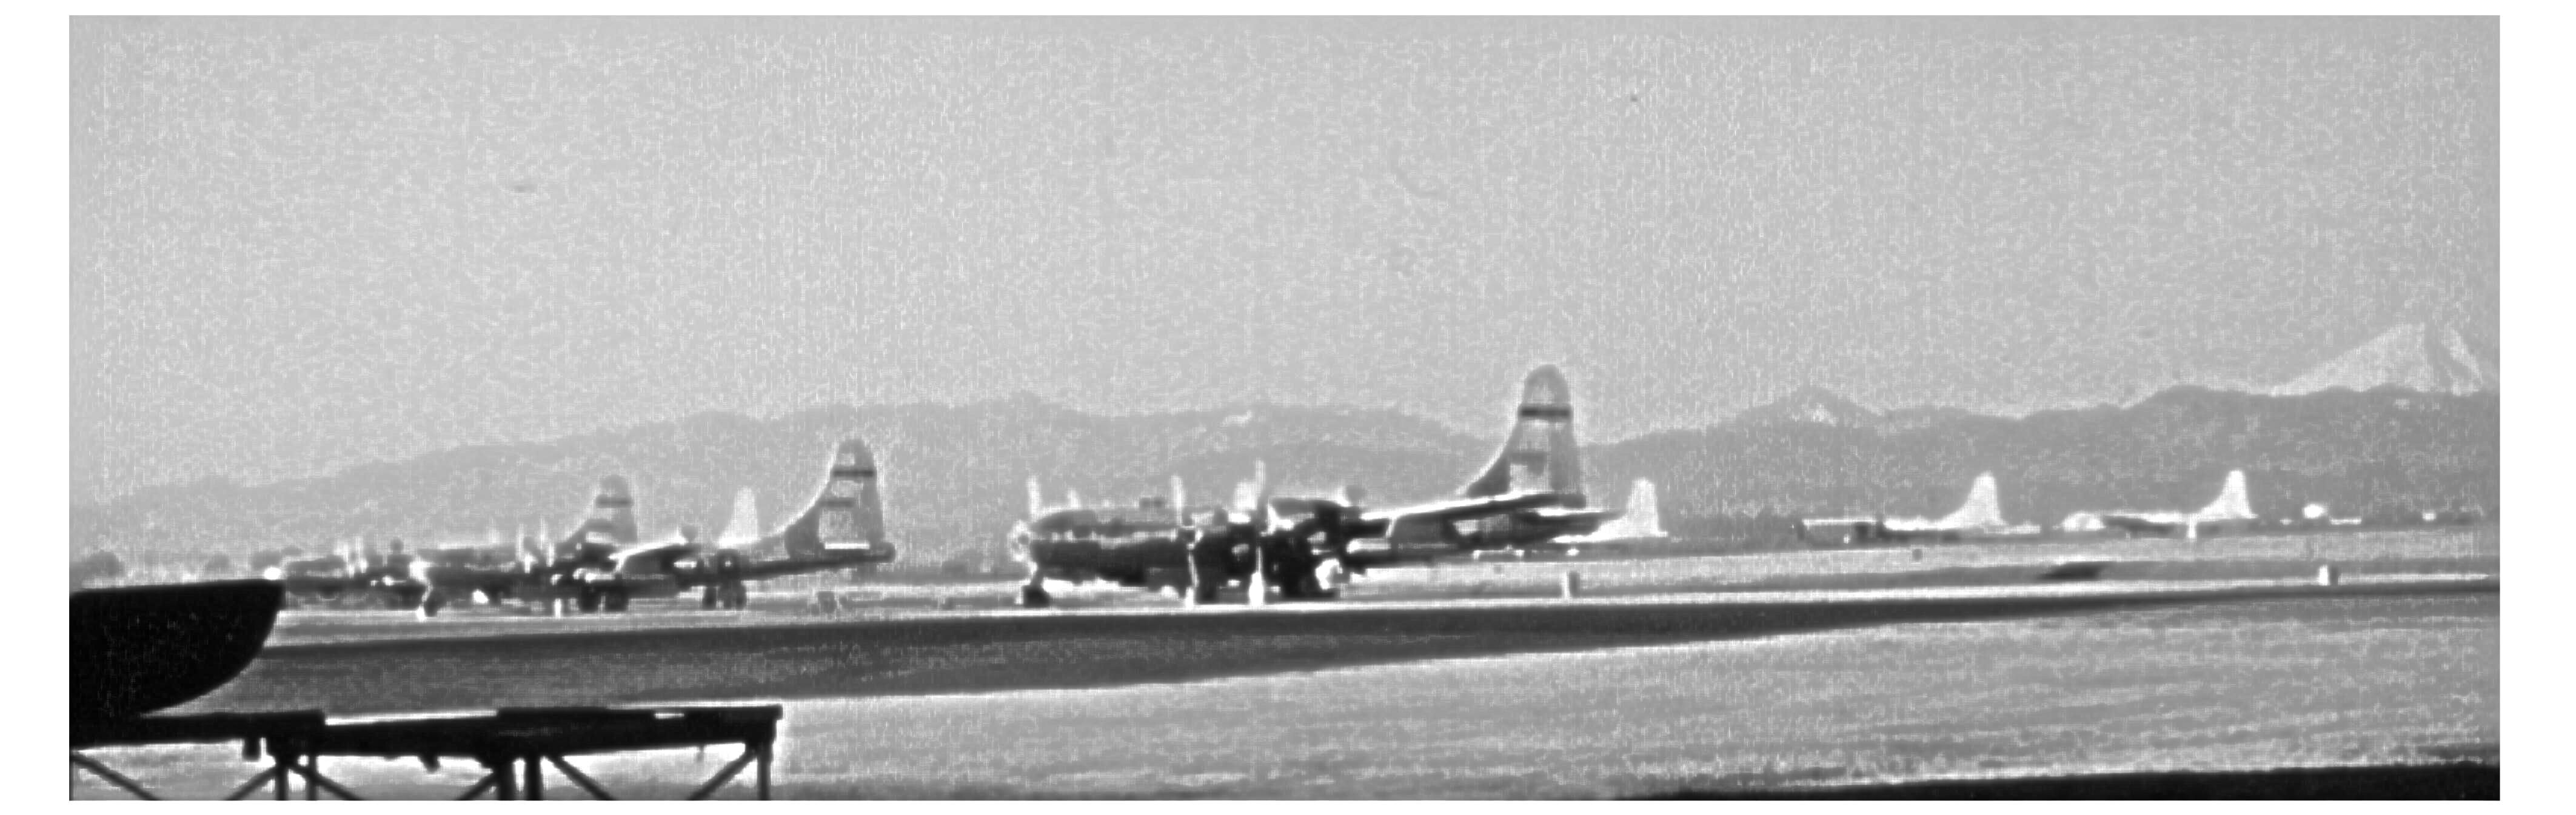 WB-50 Flightline at Yokota AB Japan